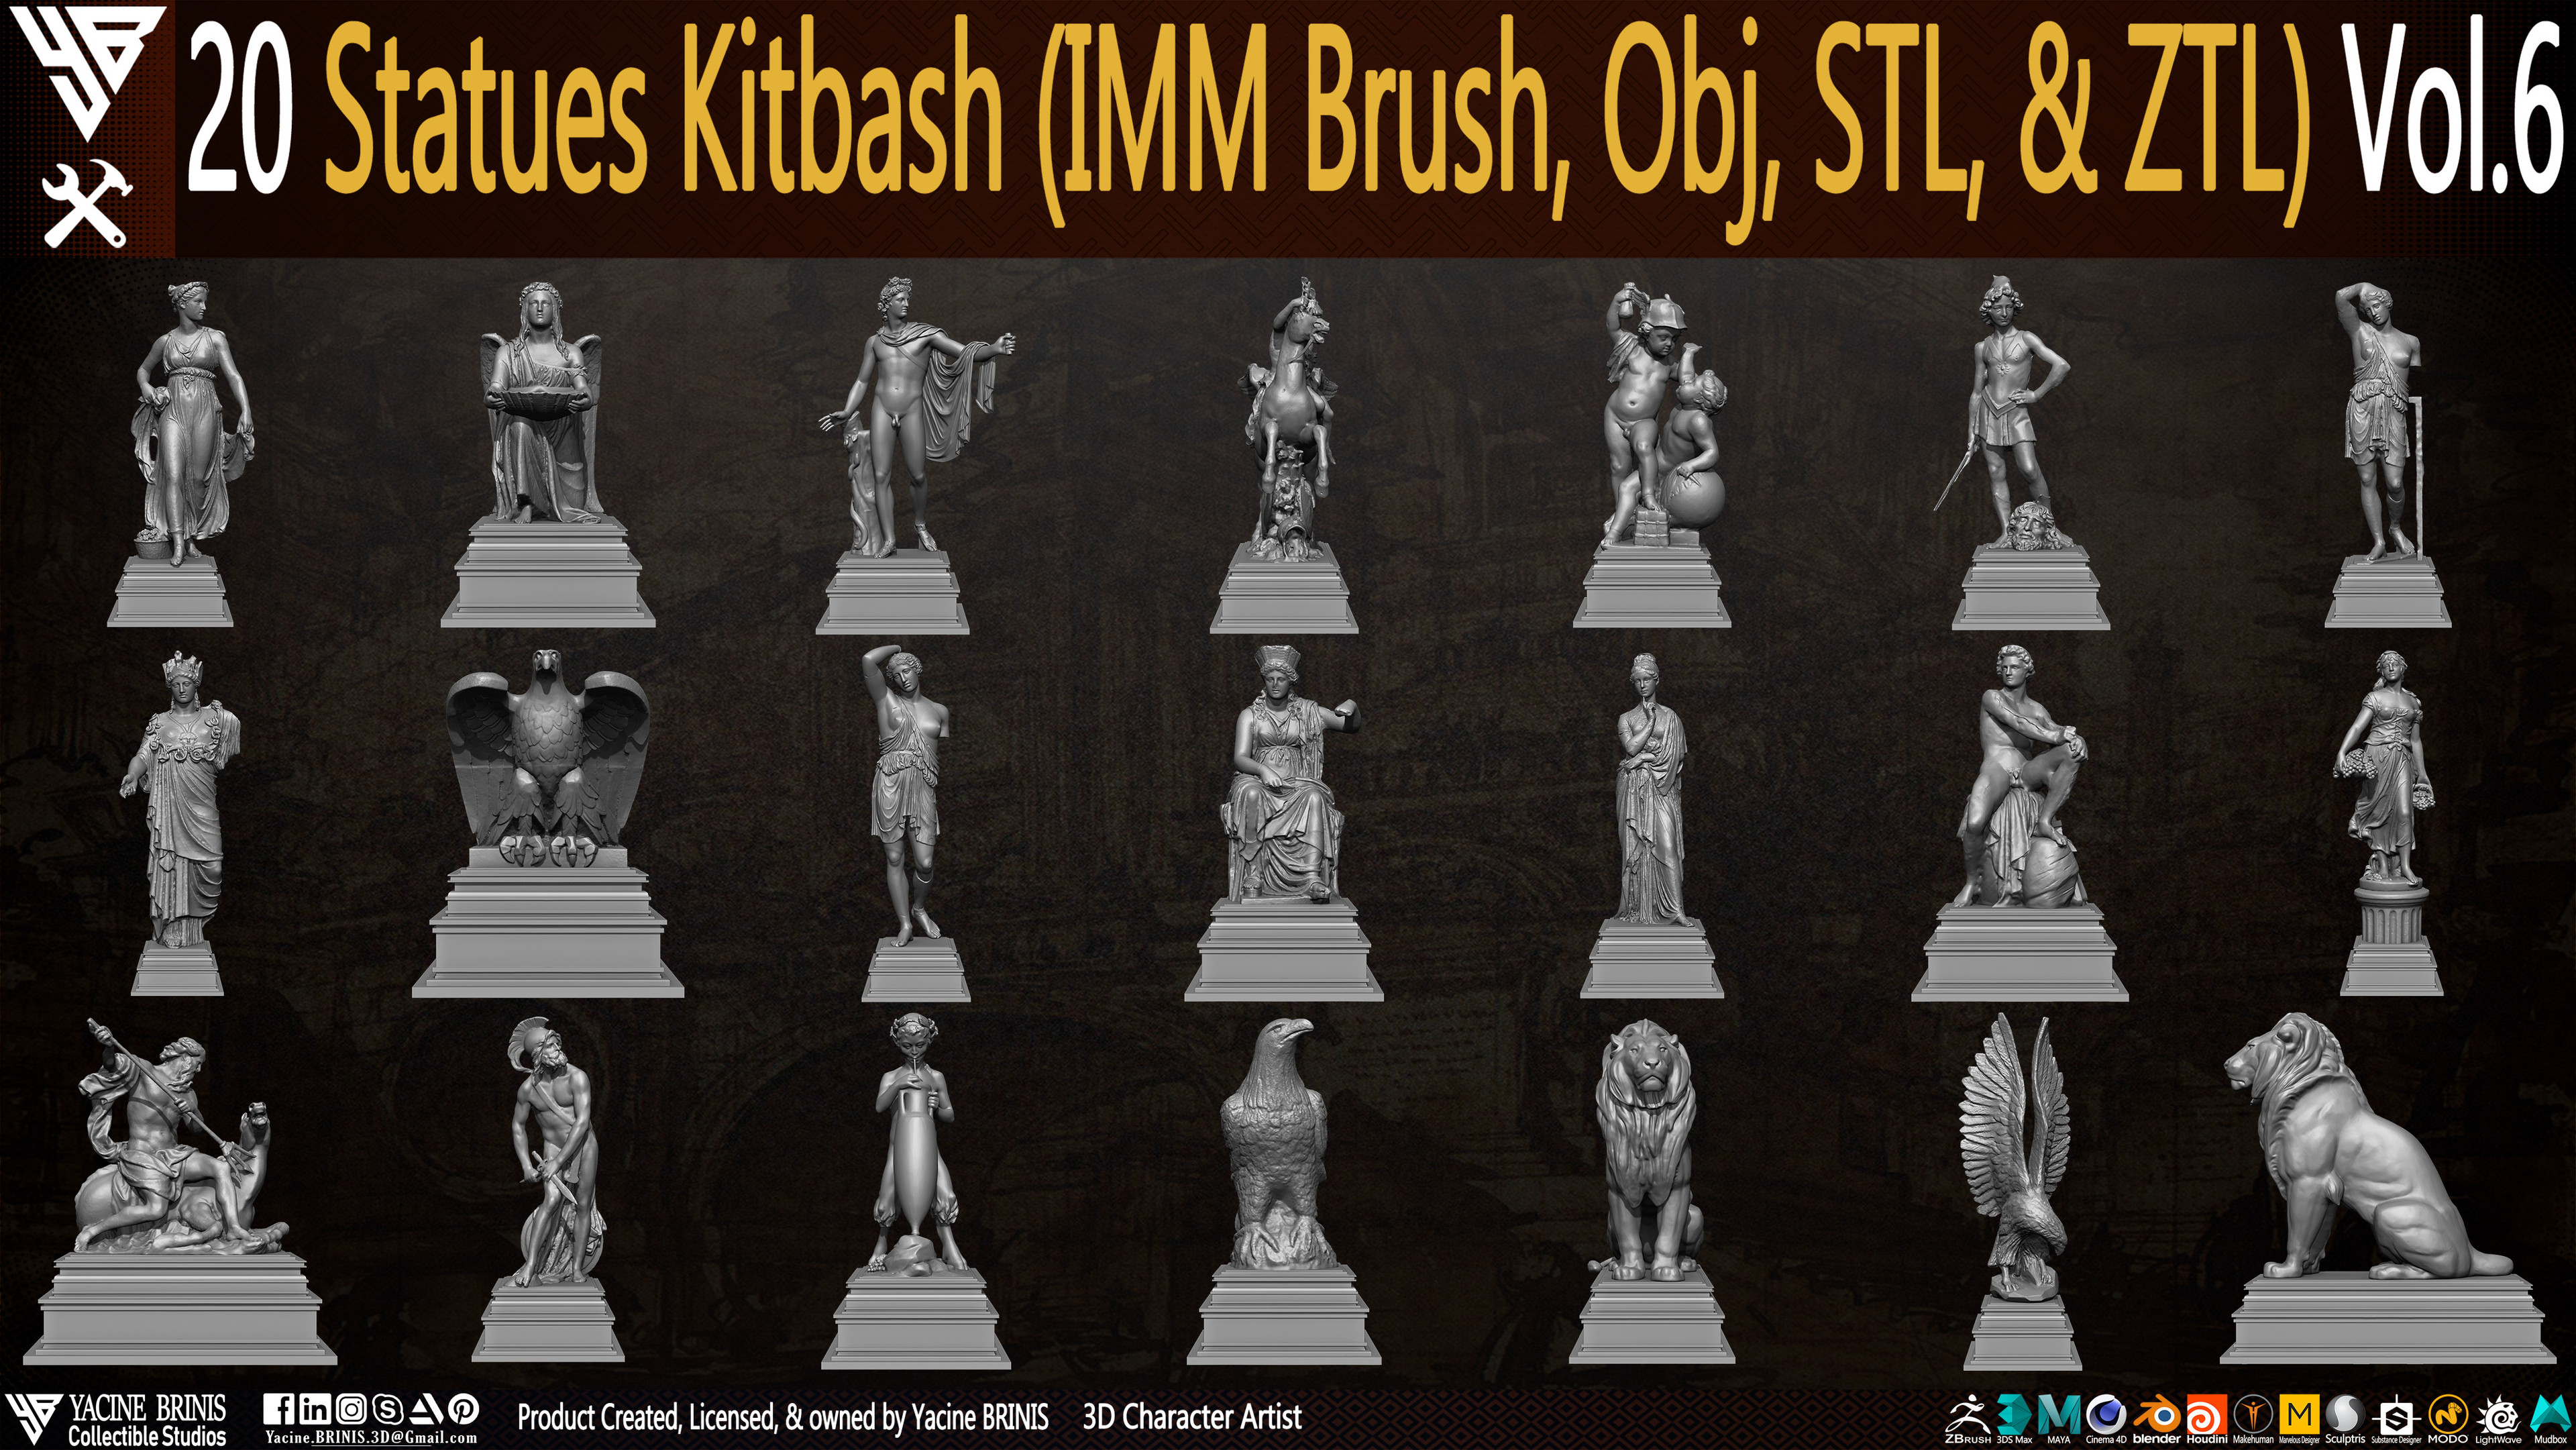 Statues Kitbash by yacine brinis Set 40